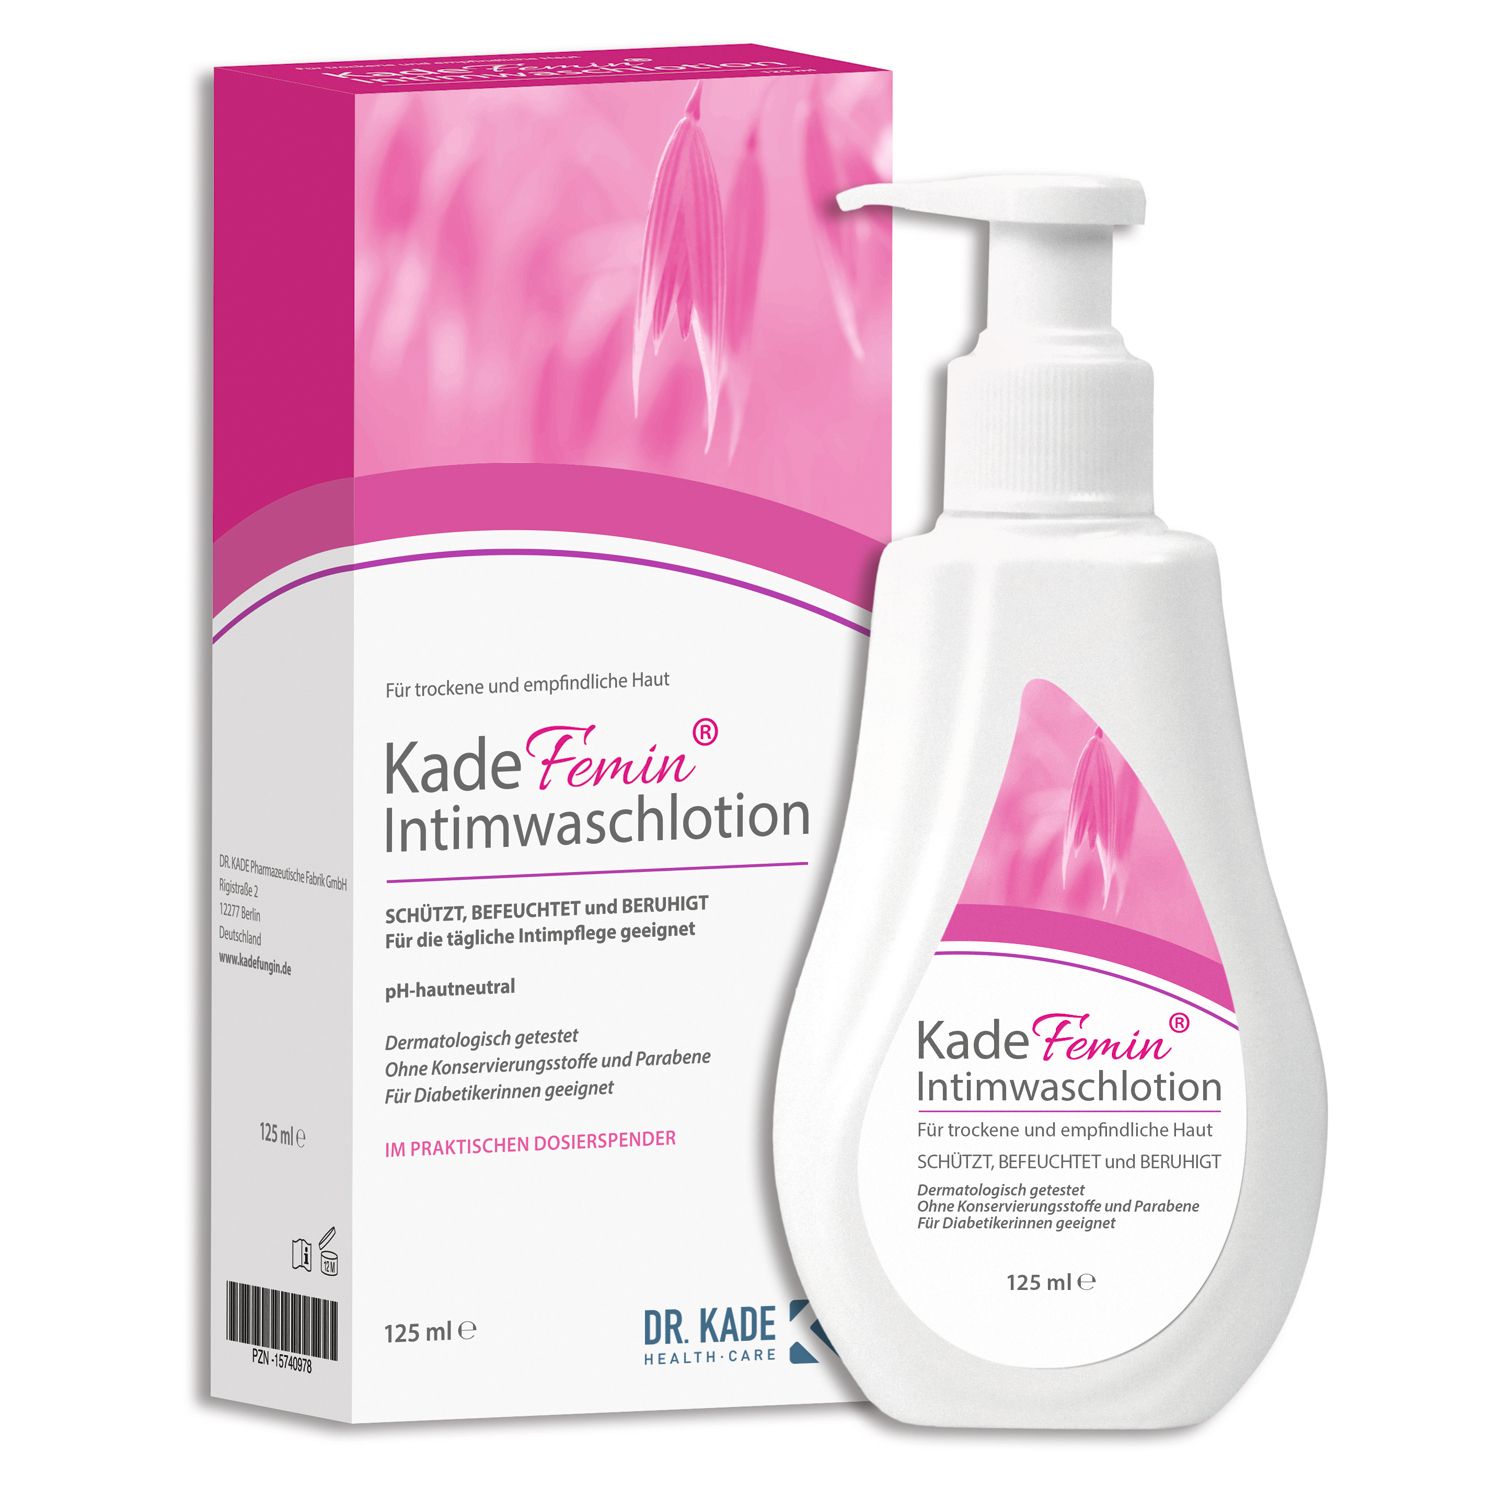 KadeFemin® Intimwaschlotion